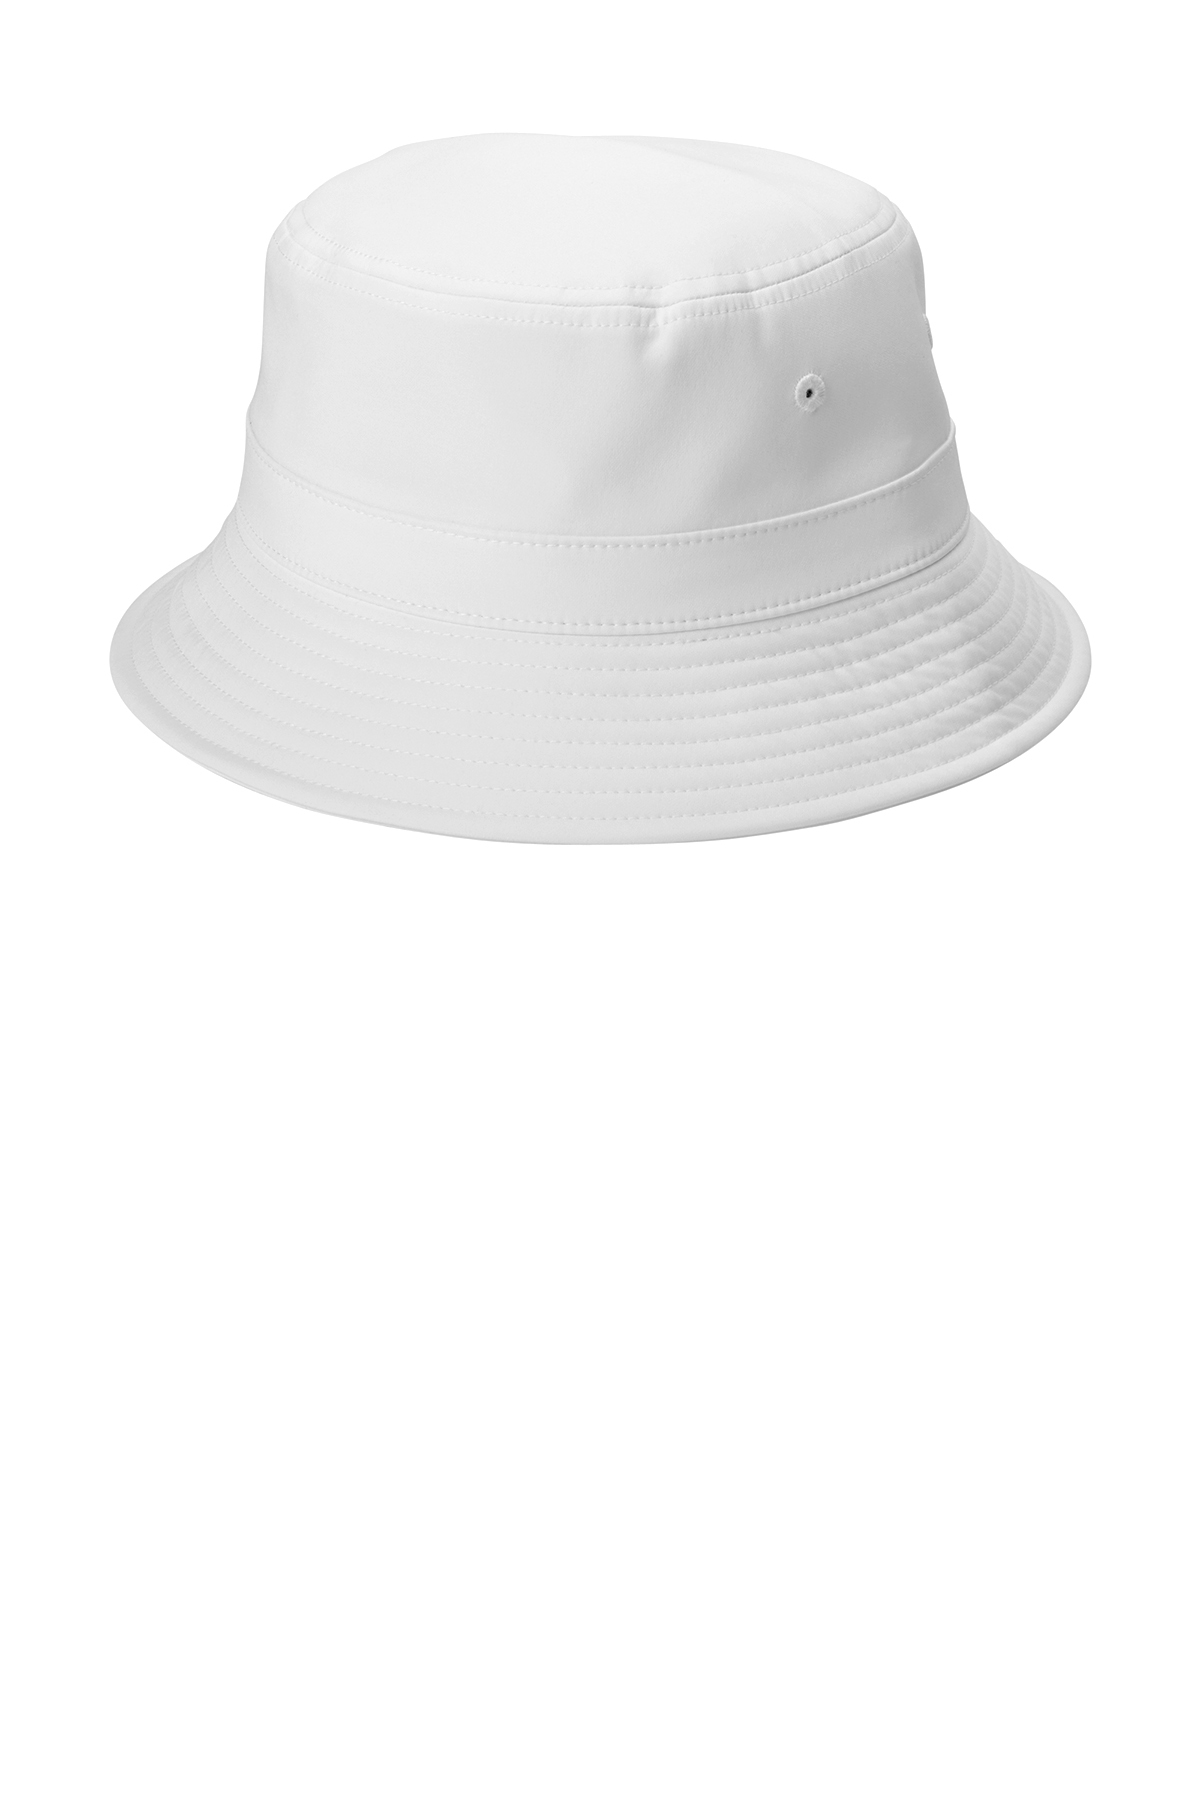 MRD Fly Fishing Bucket Hat – Moana Road